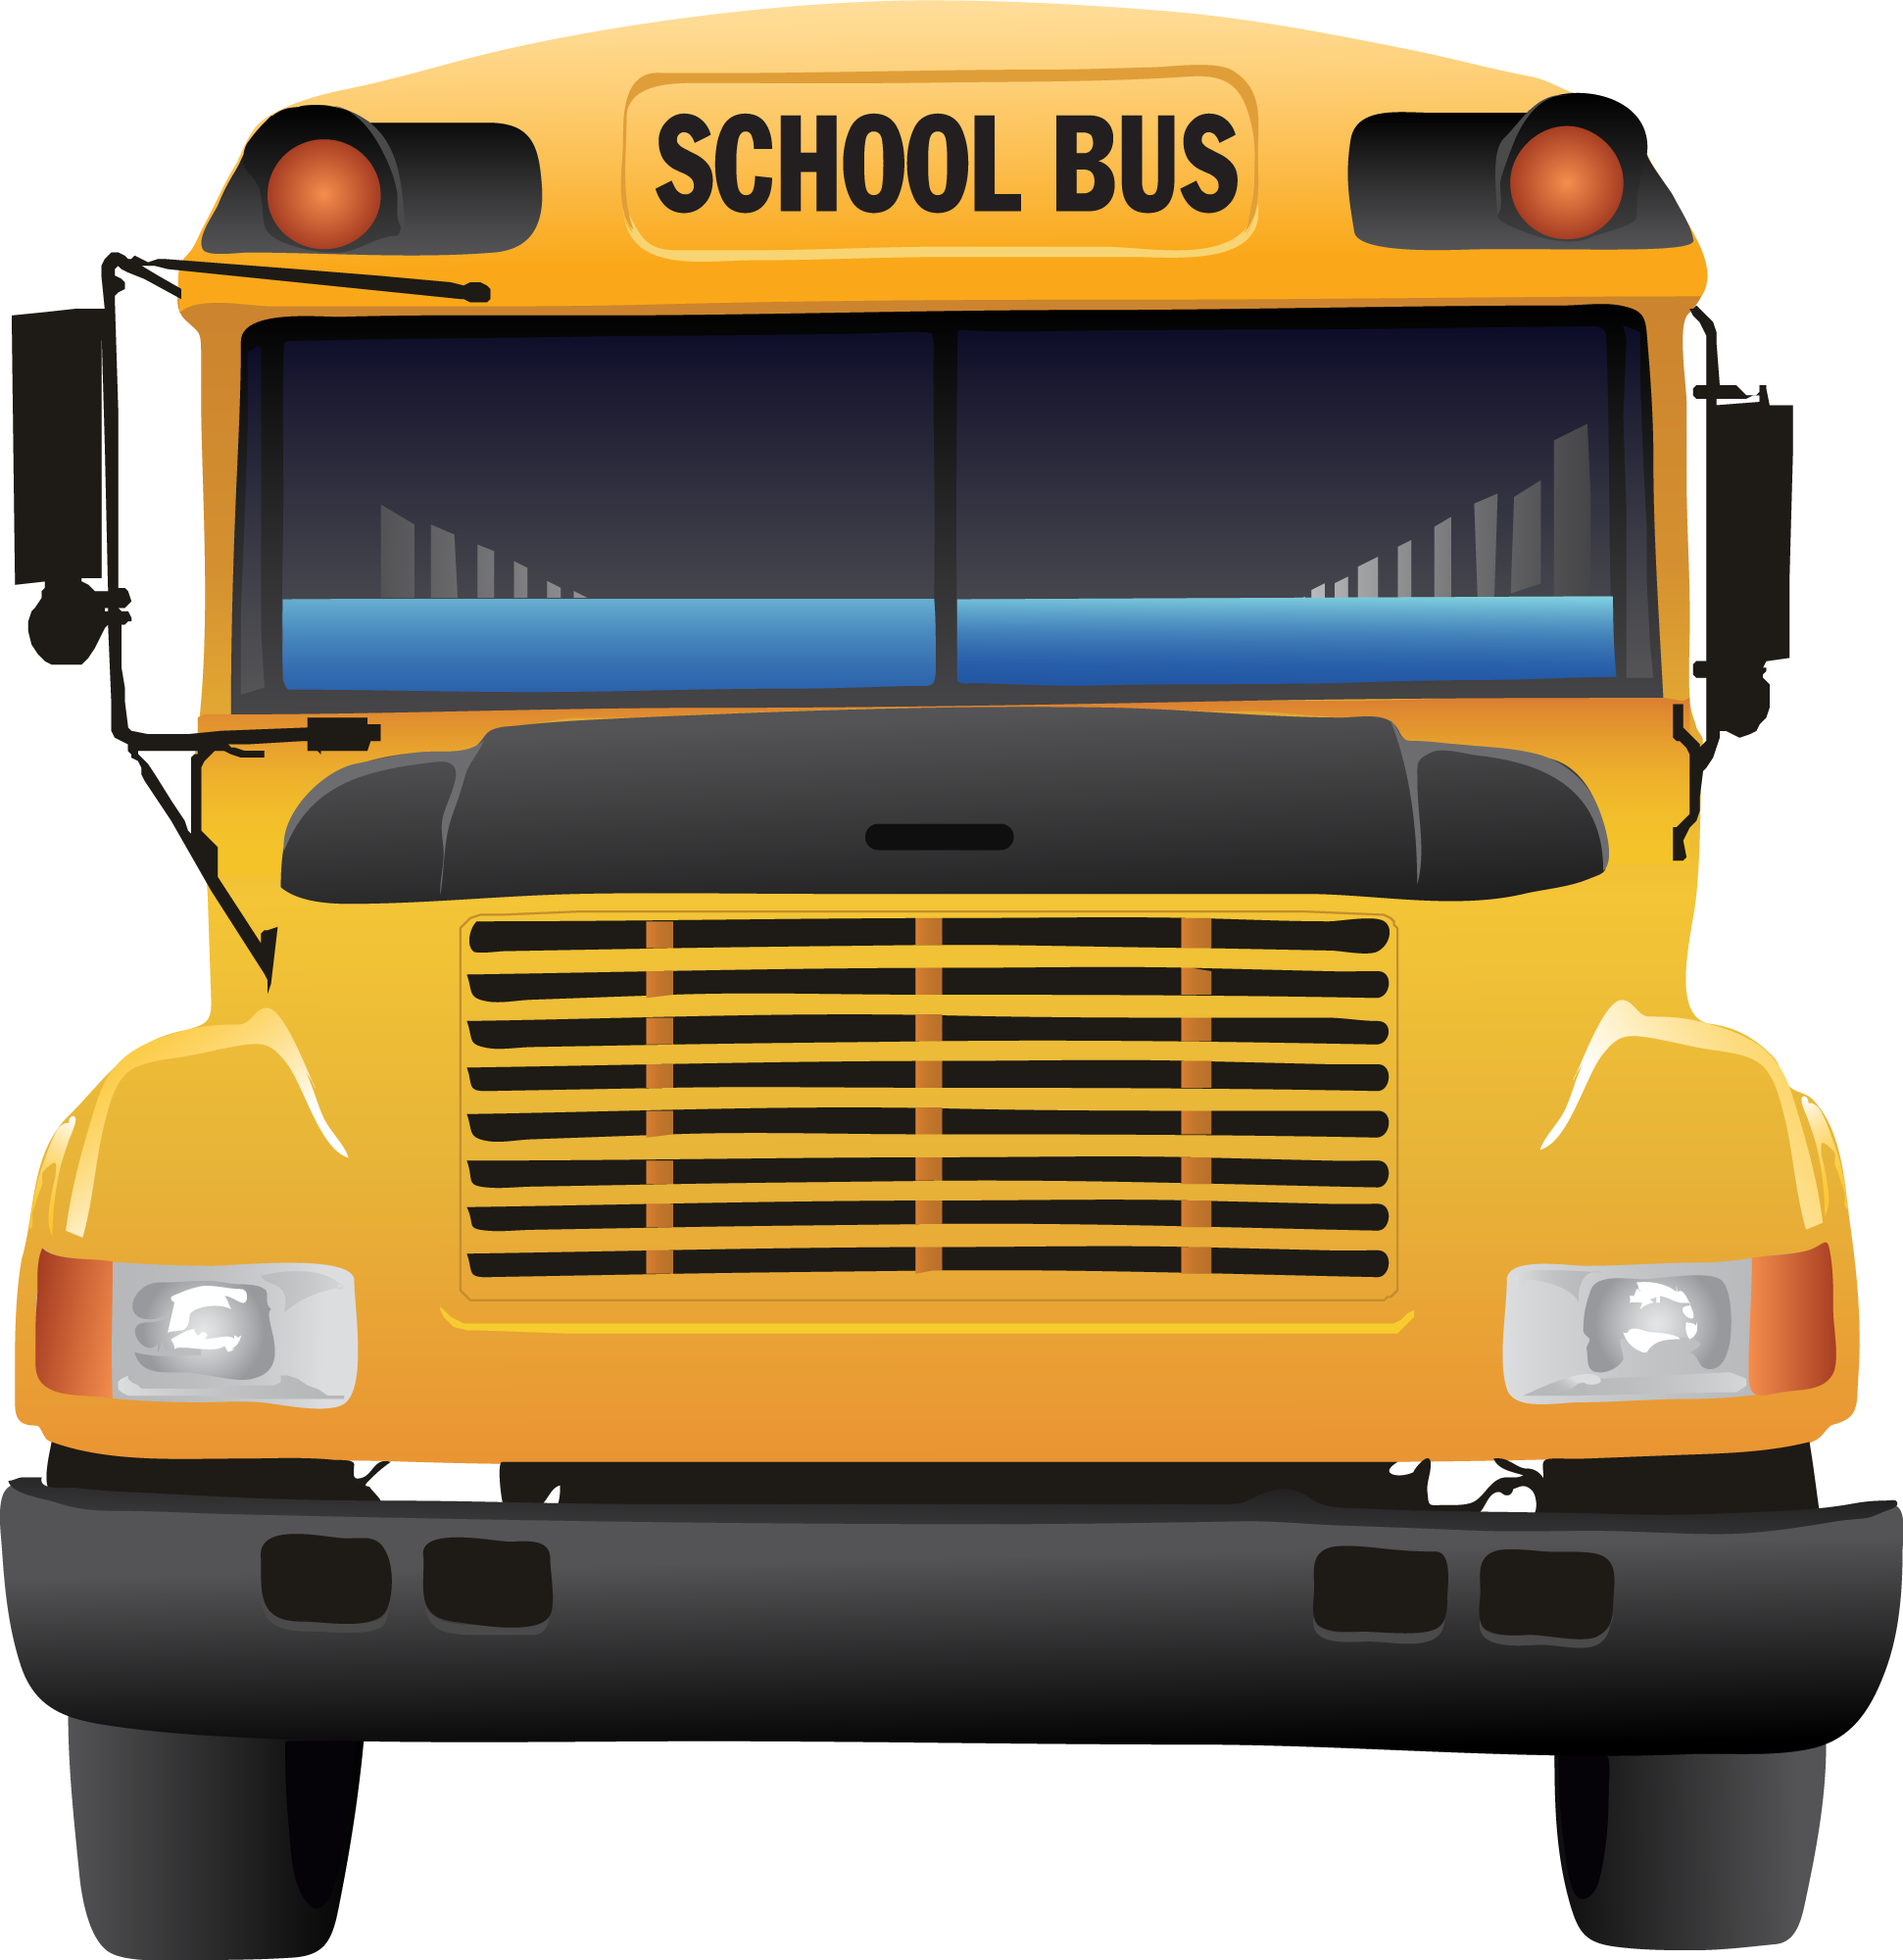 School-Bus-Image-3